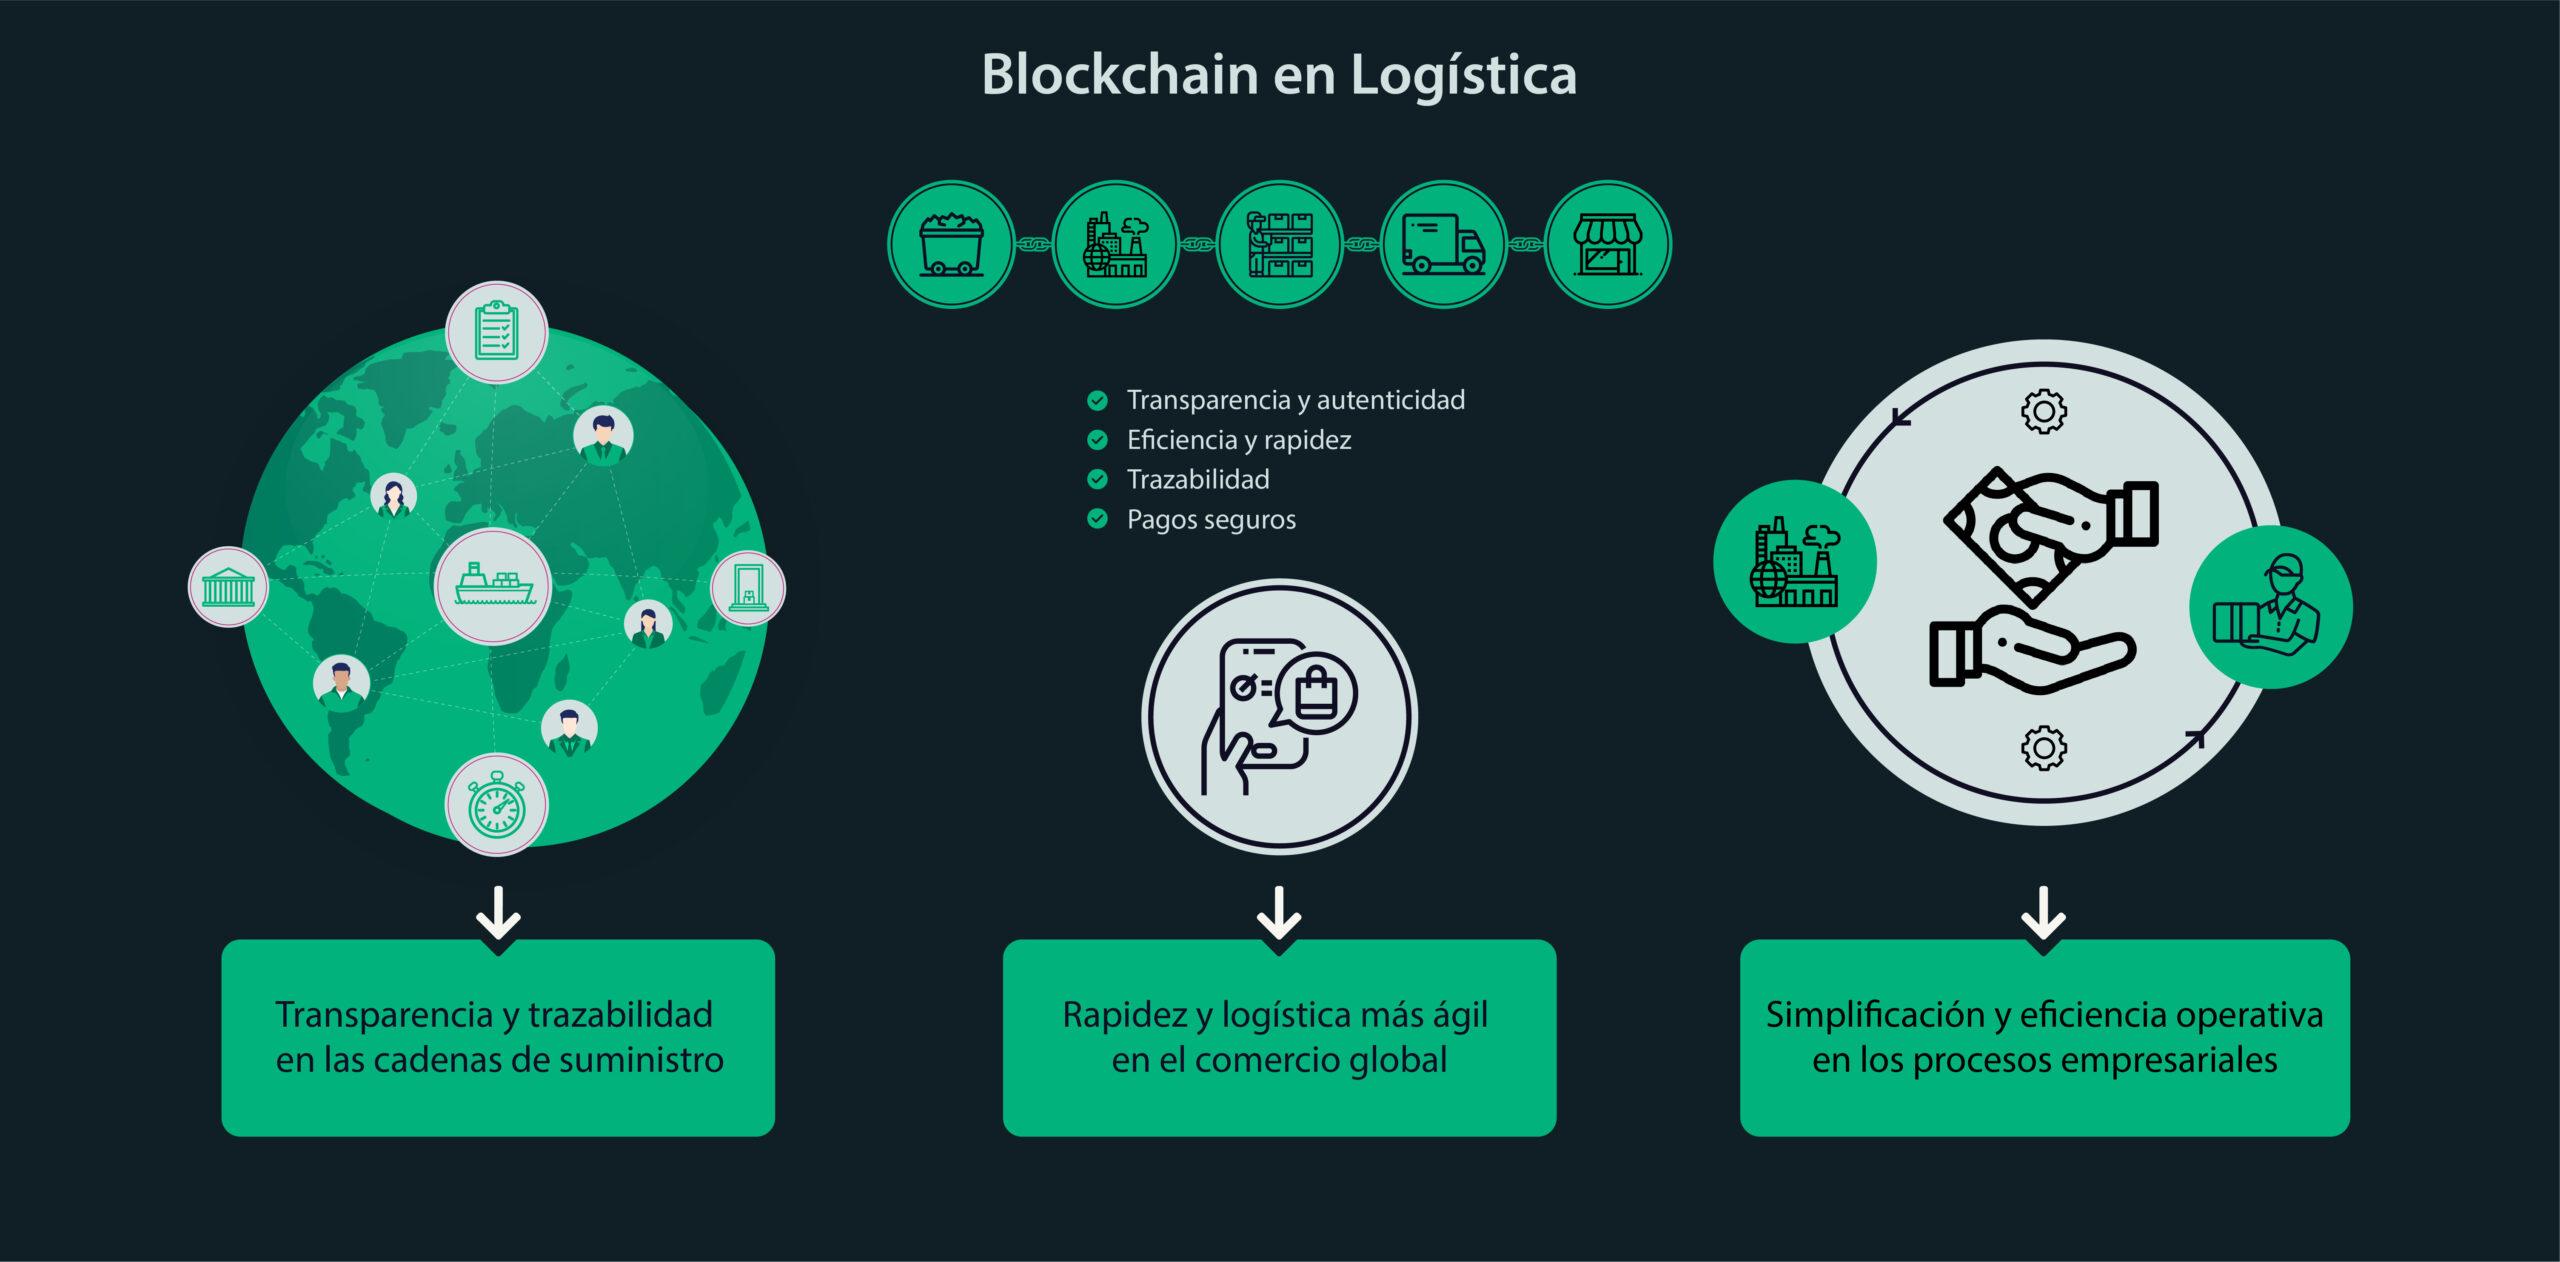 Los beneficios de Blockchain en logística